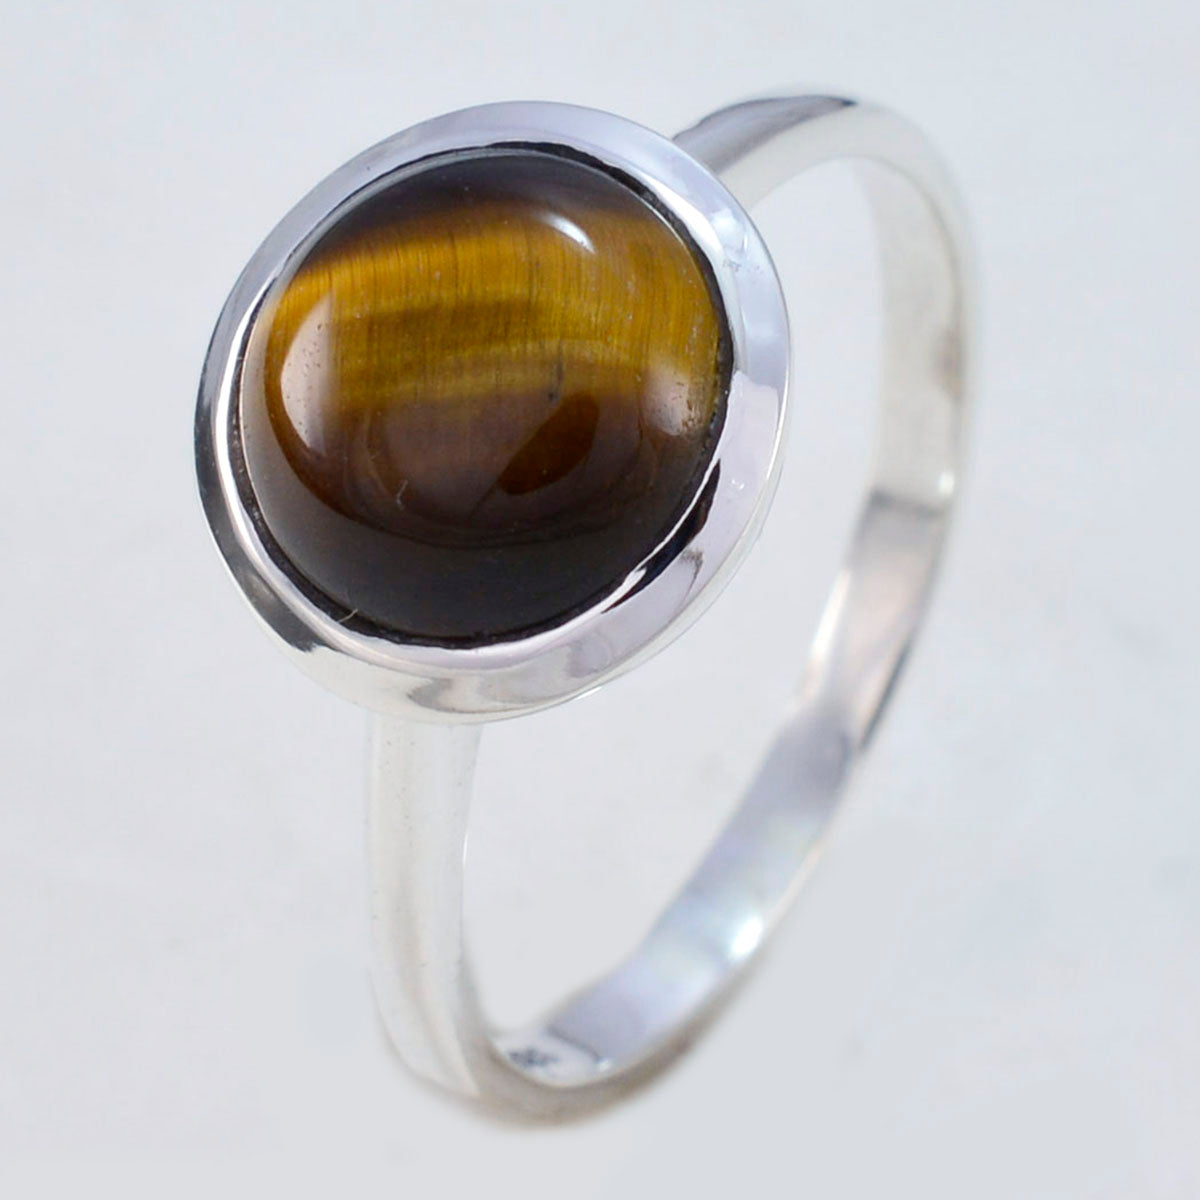 riyo элегантный драгоценный камень тигровый глаз кольца из стерлингового серебра 925 пробы ювелирные изделия для мамы